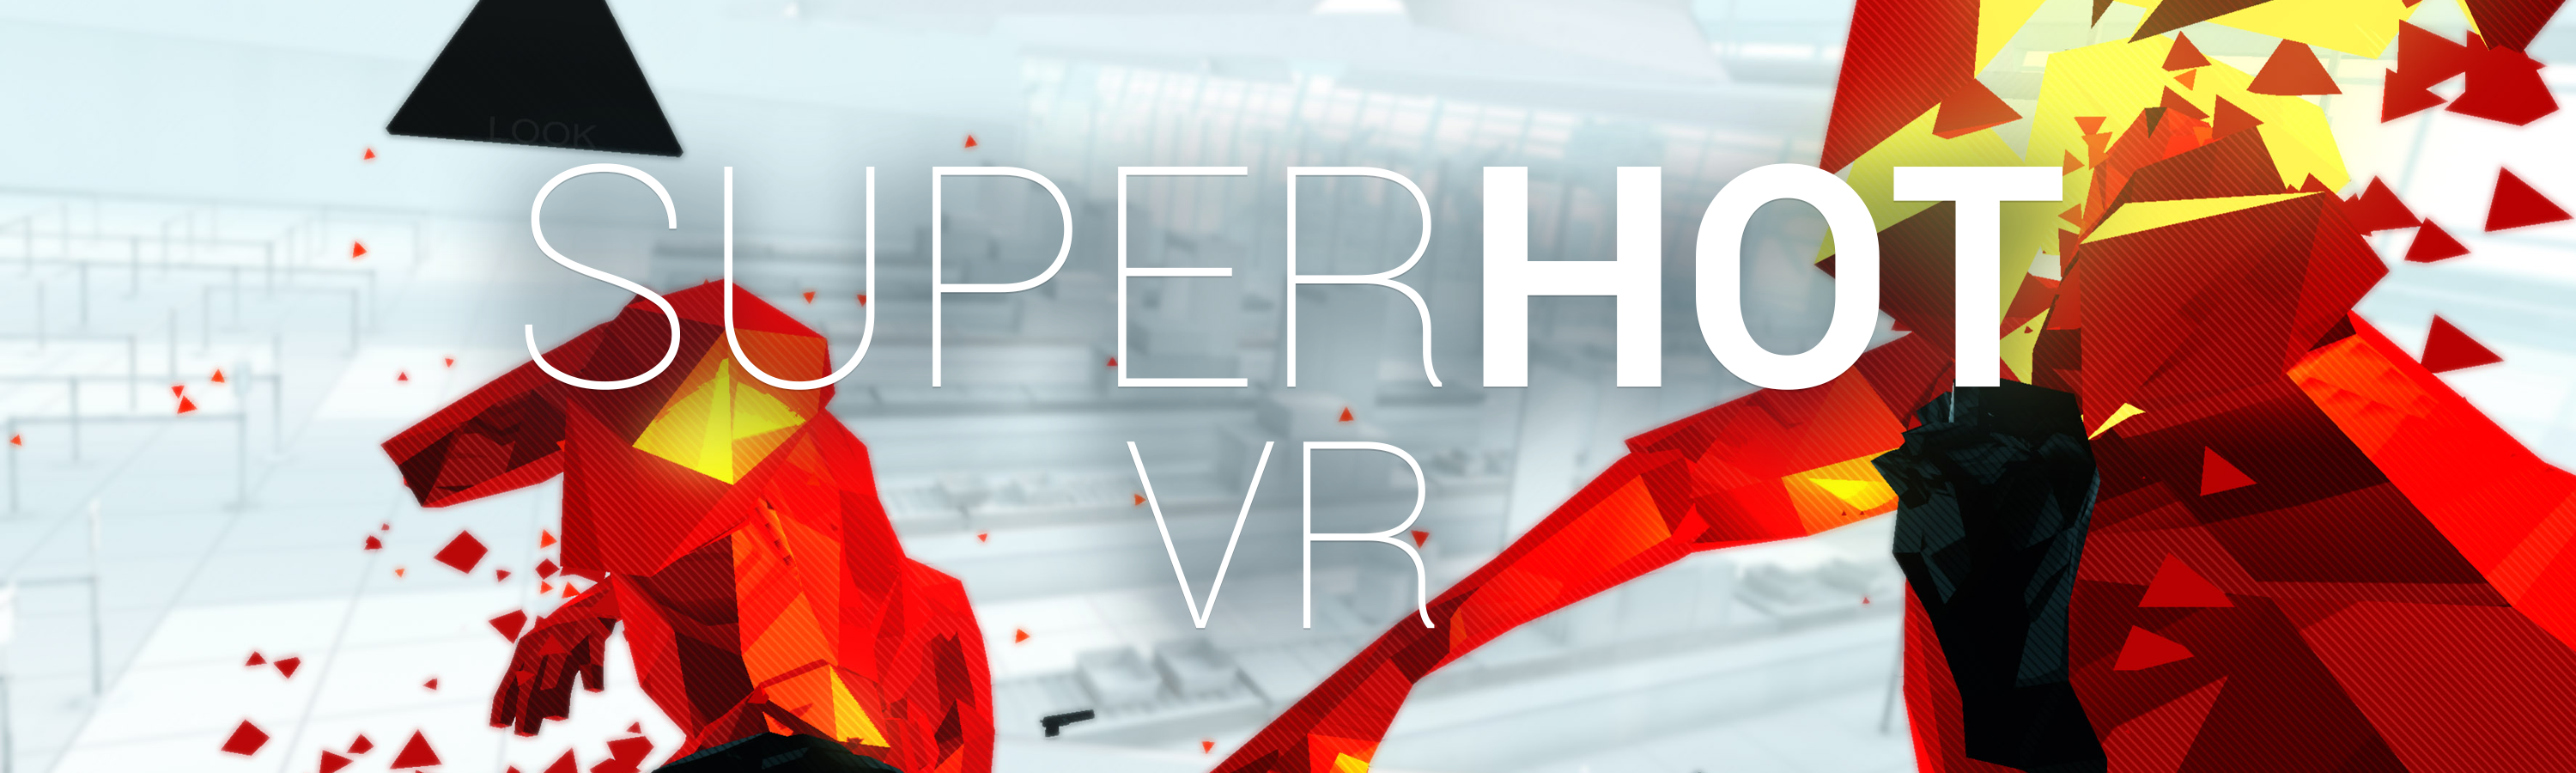 Ordinere I fare strimmel Superhot VR Review - MonsterVine